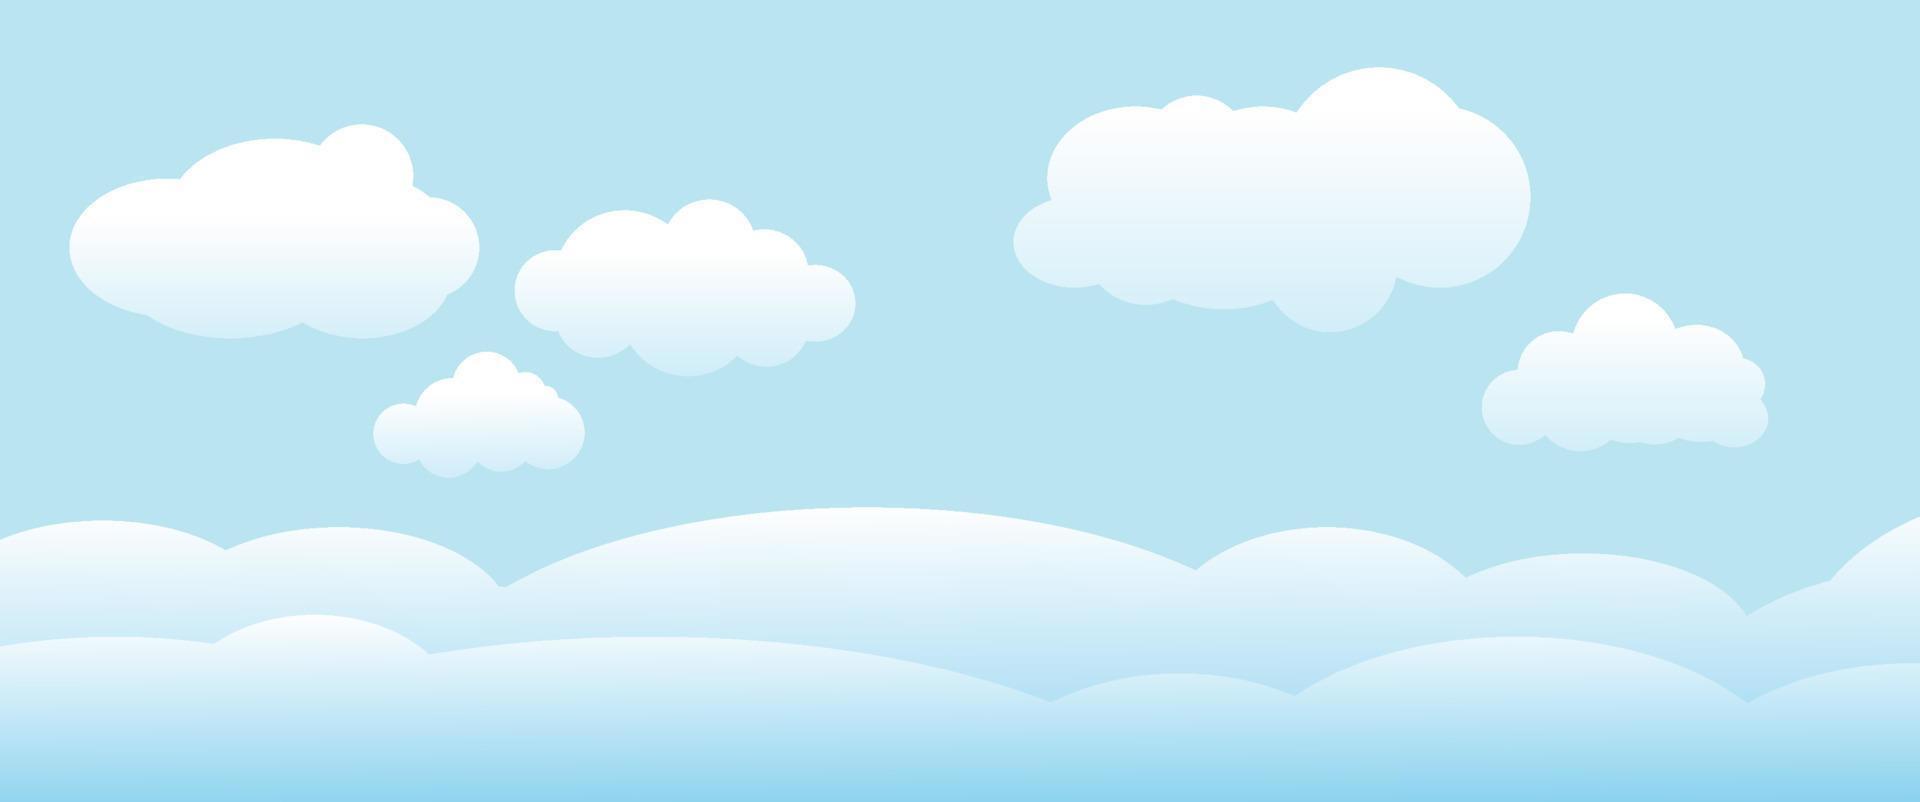 nuvole e cielo, sfondo della natura del tempo, banner orizzontale, illustrazione vettoriale. vettore